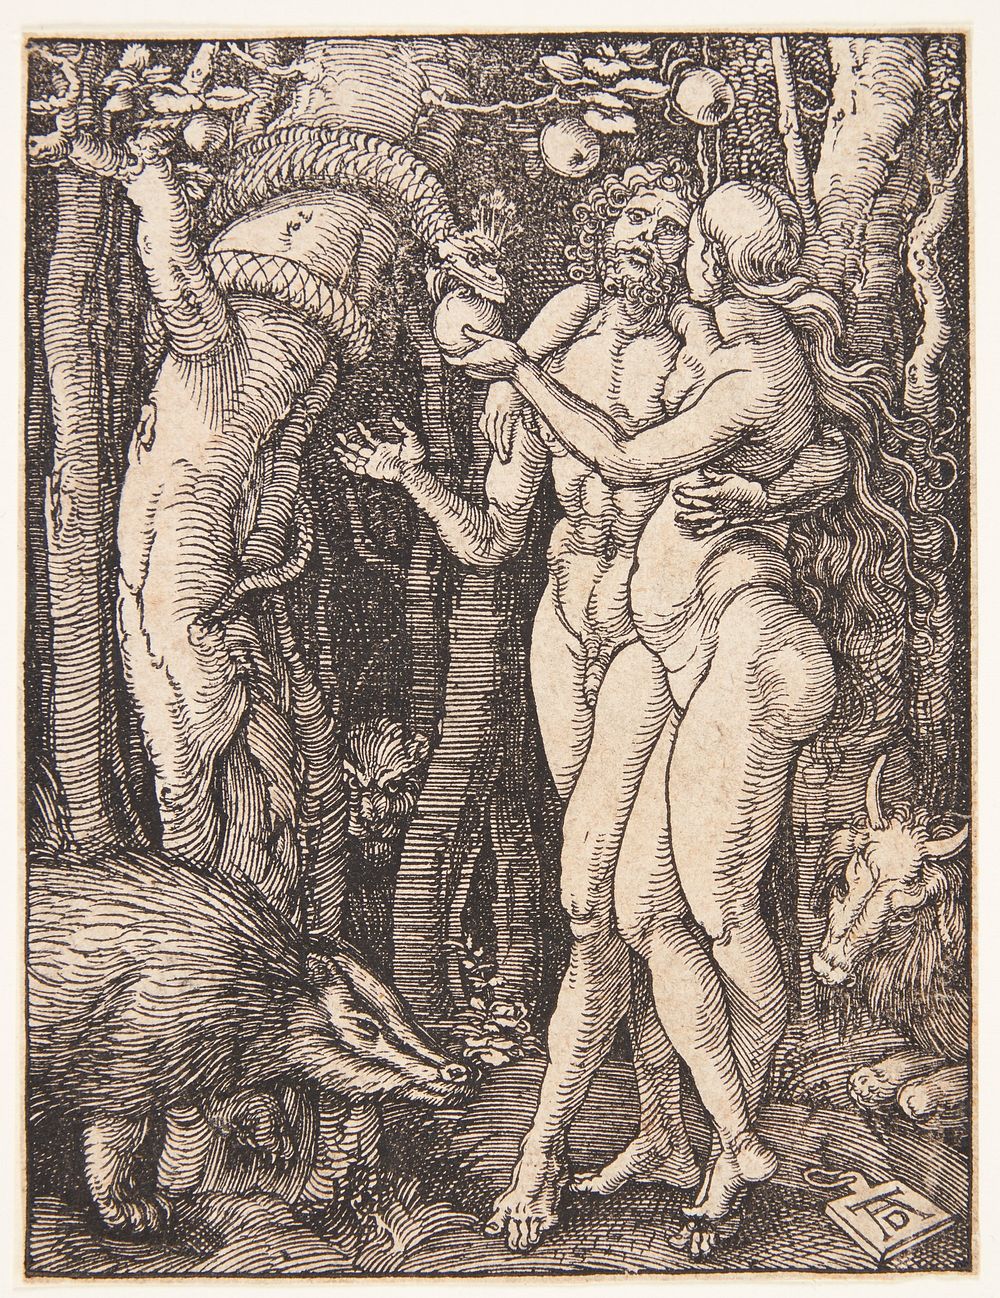 The Fall of Man by Albrecht Dürer